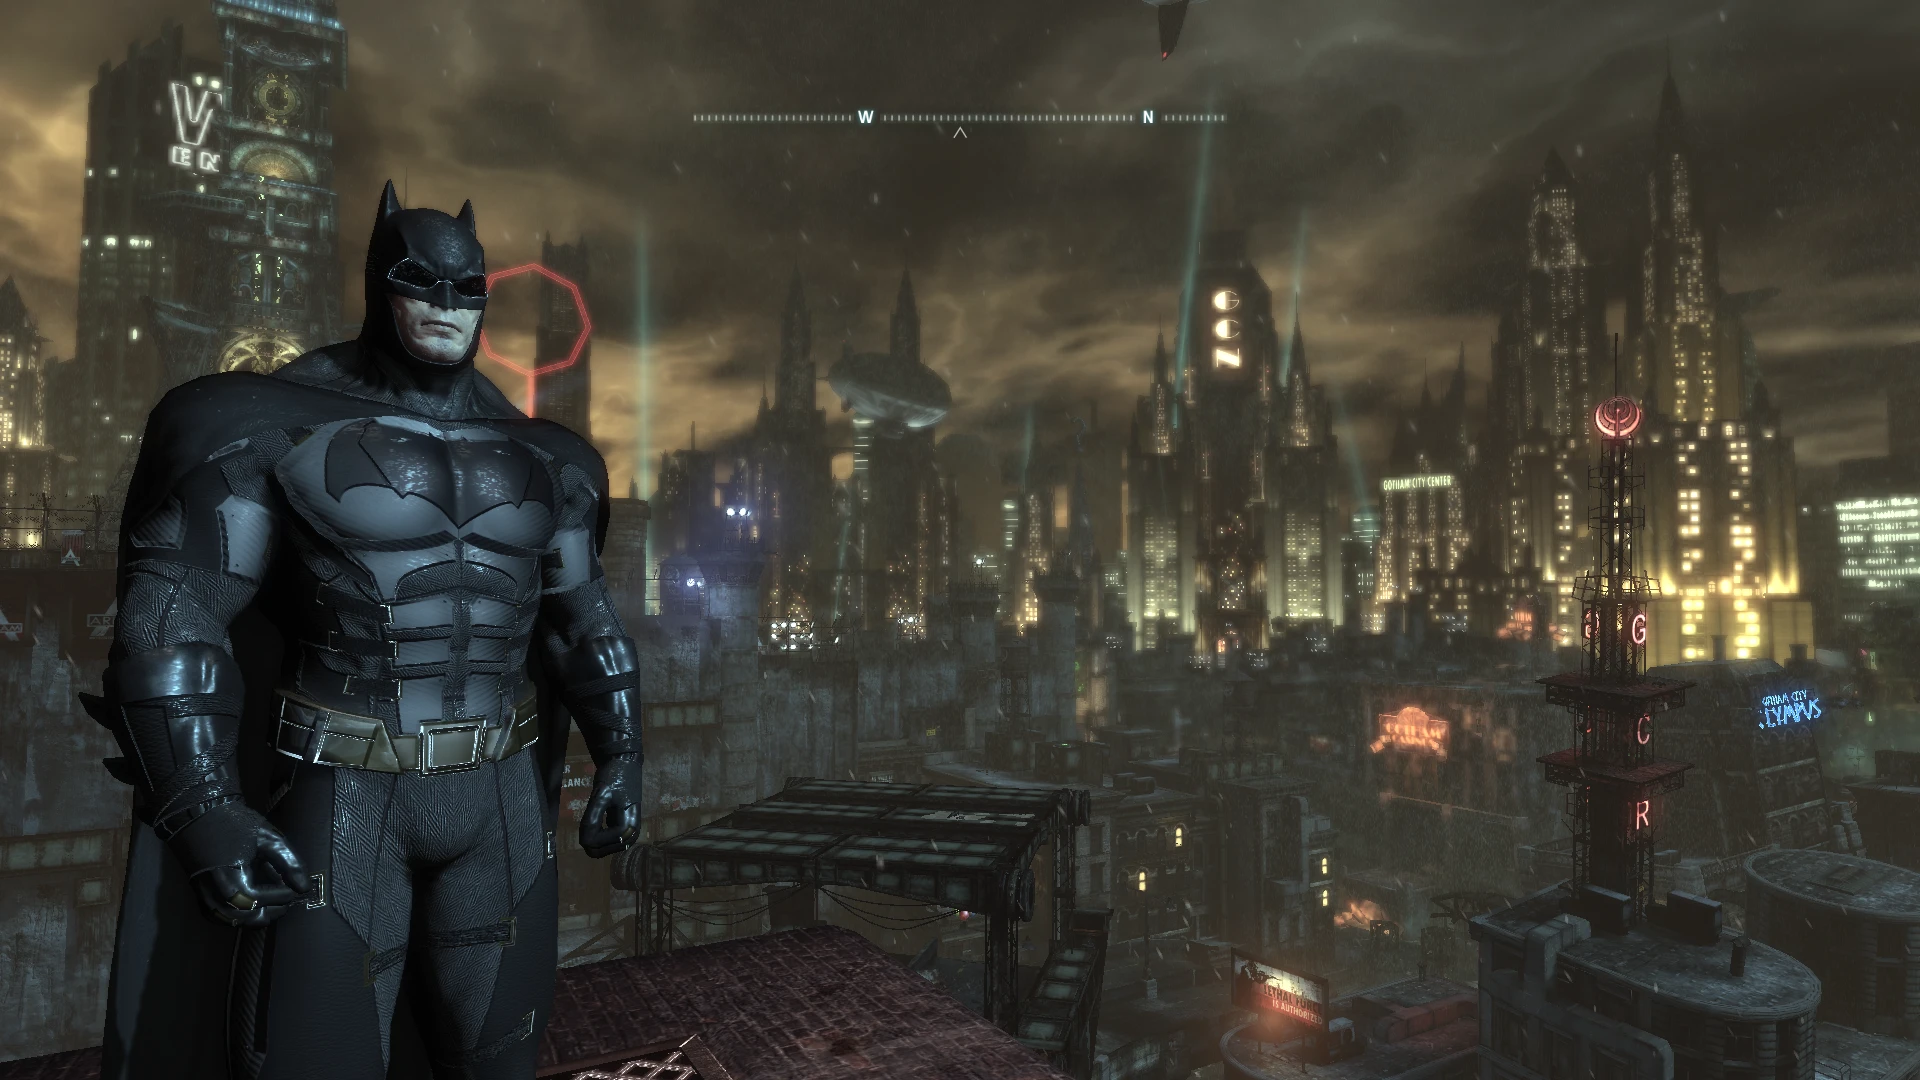 Бэтмен на английском языке. Бэтмен Аркхем кнайт. Batfleck Arkham Knight Suit Mod. Бэтмен: нулевой год.